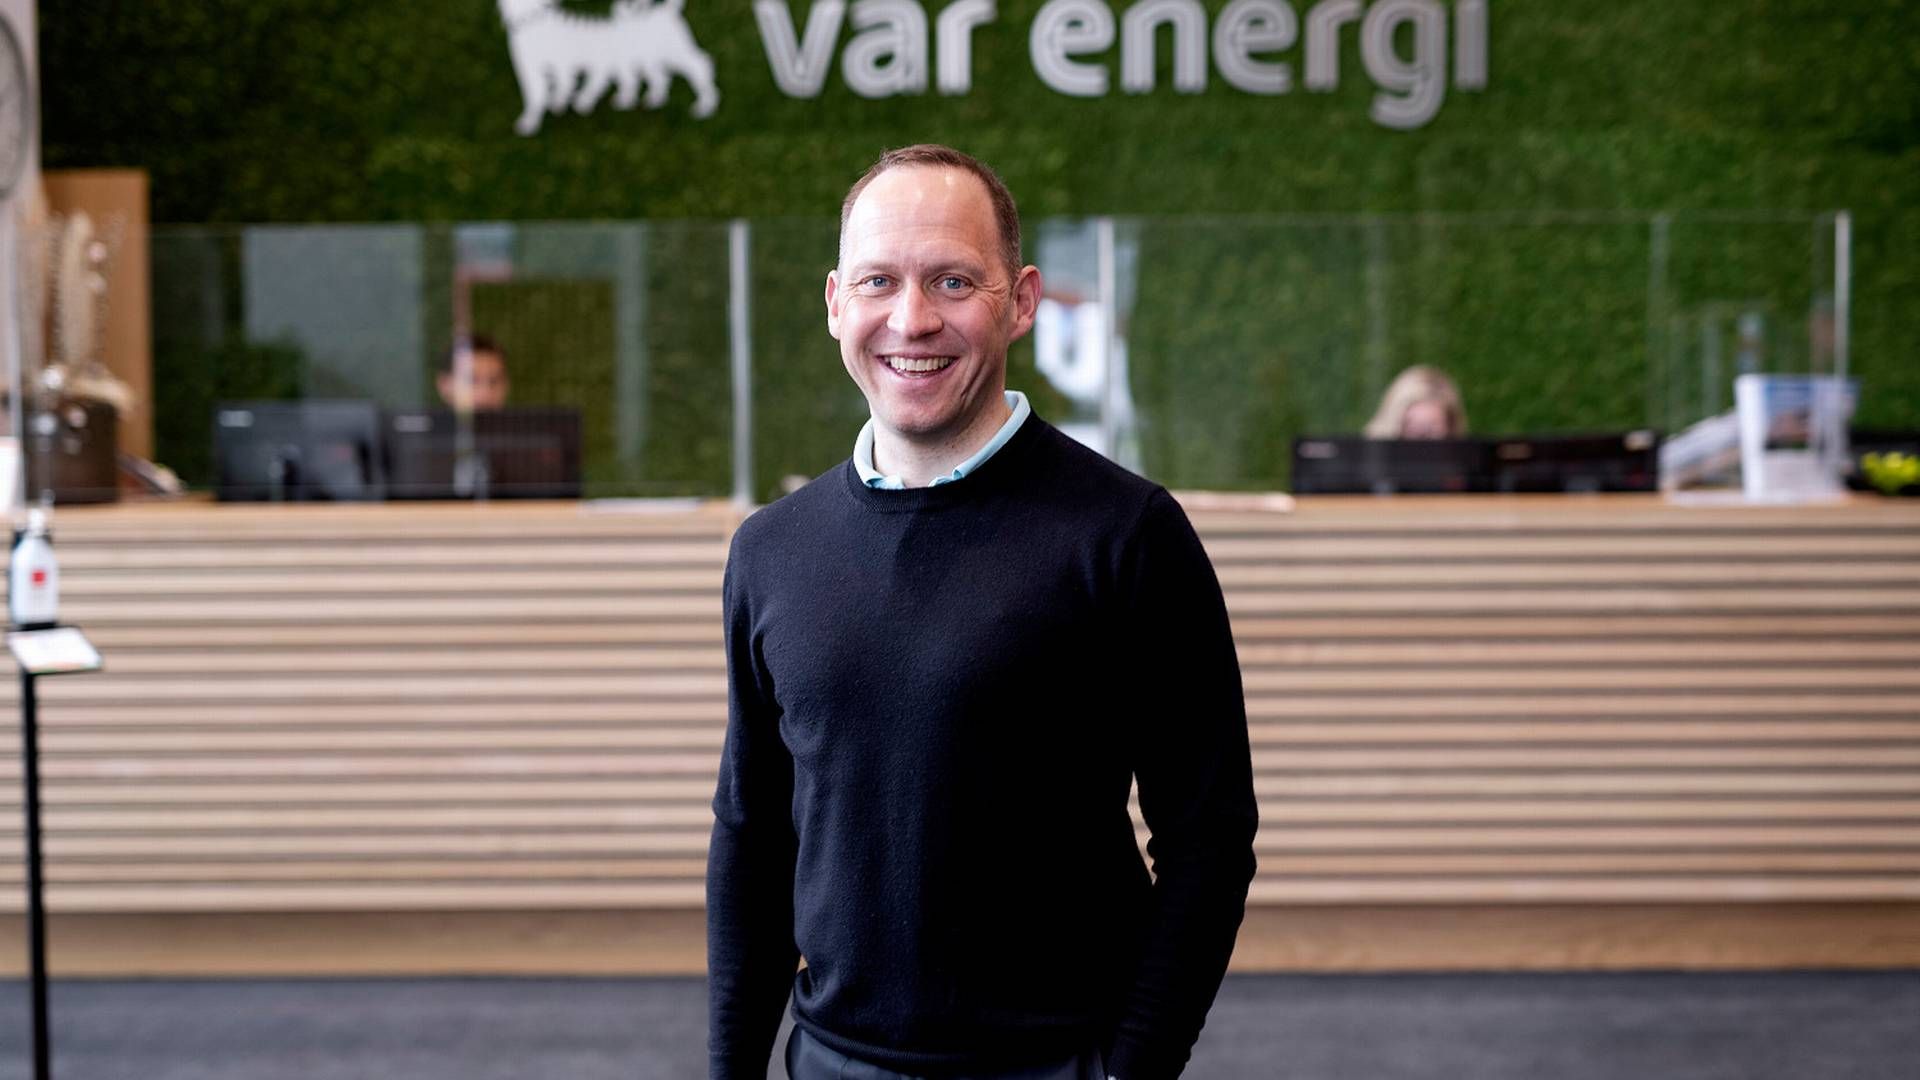 FORNØYD: Vår Energi og sjef Torger Rød er fornøyd etter resultatet av den nylige TFO-tildelingen. | Foto: Vår Energi